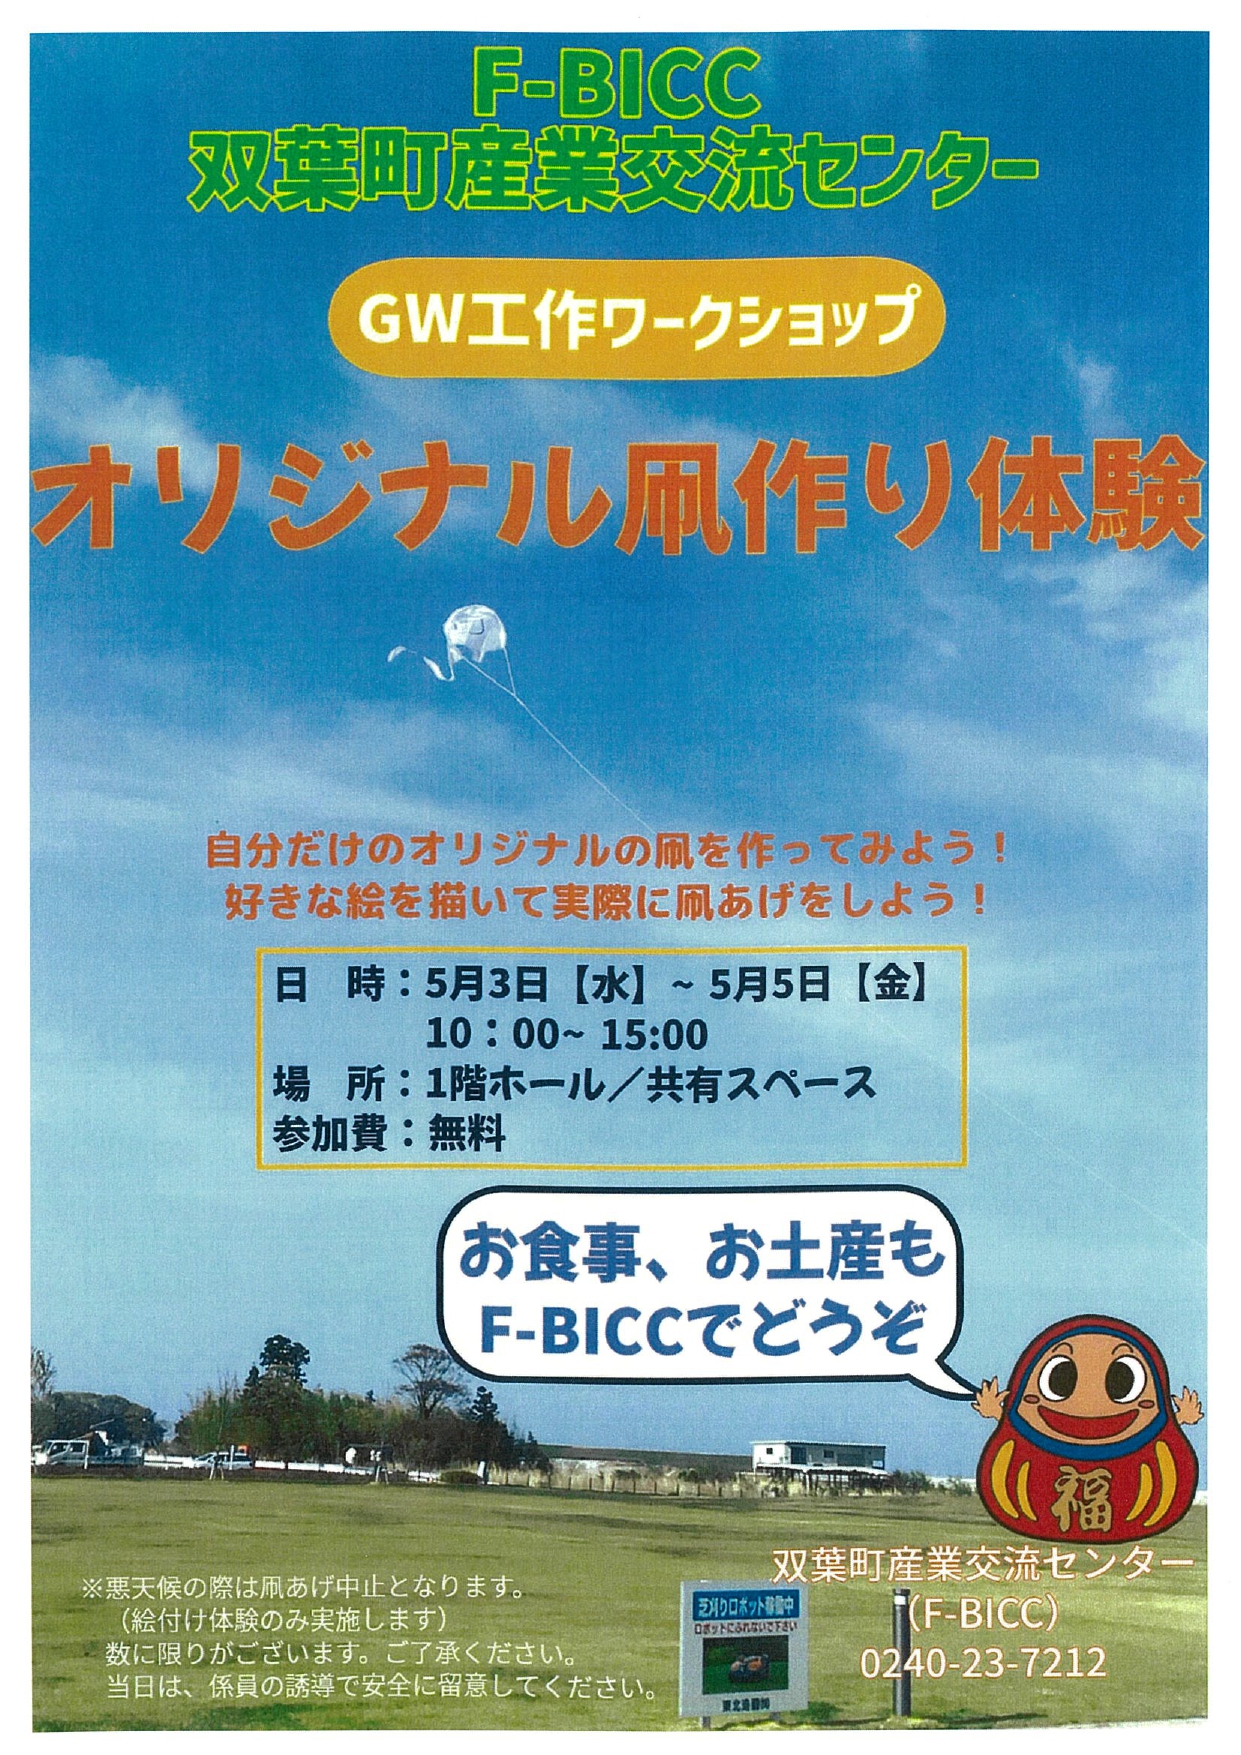 「GWワークショップ」オリジナル凧作り体験